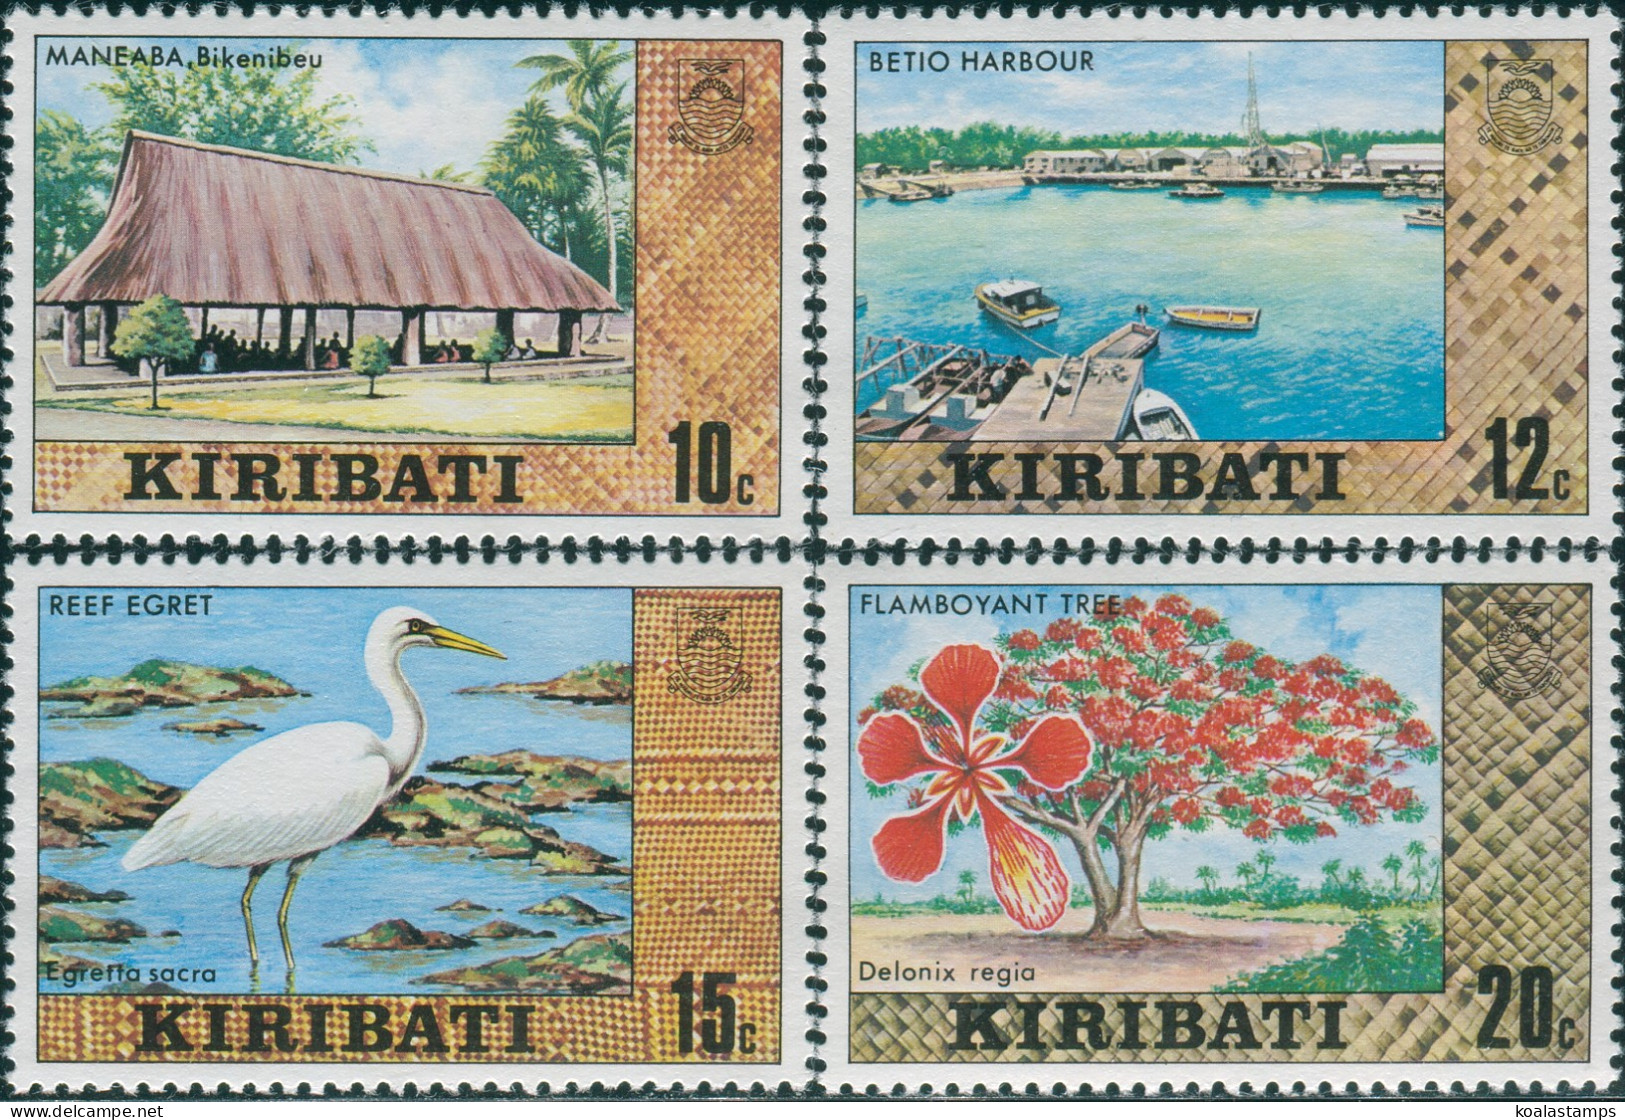 Kiribati 1980 SG125-128 Building Harbour Bird Tree MNH - Kiribati (1979-...)